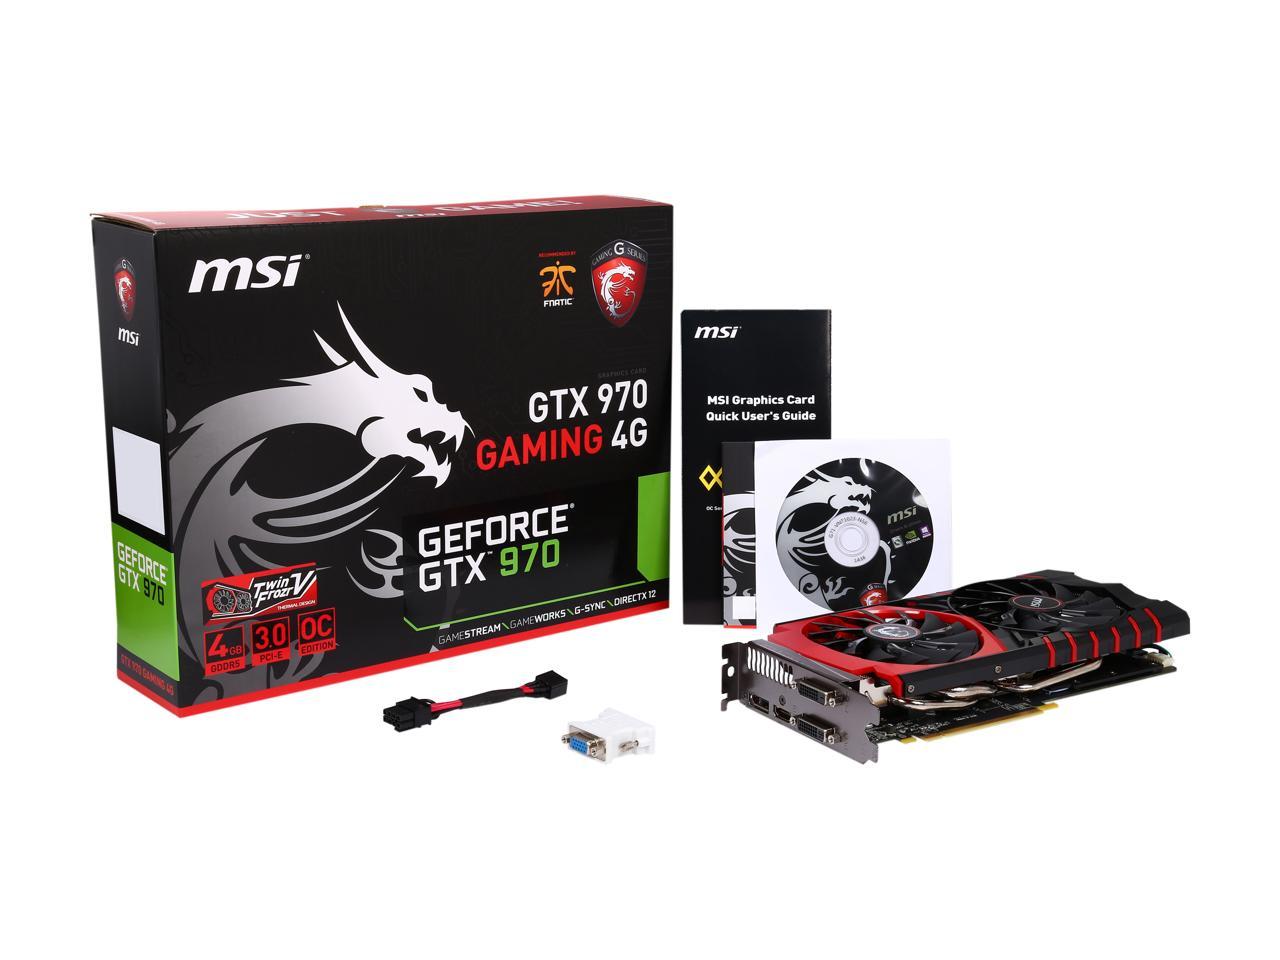 Msi Geforce Gtx 970 Gaming 4G – TeciSoft